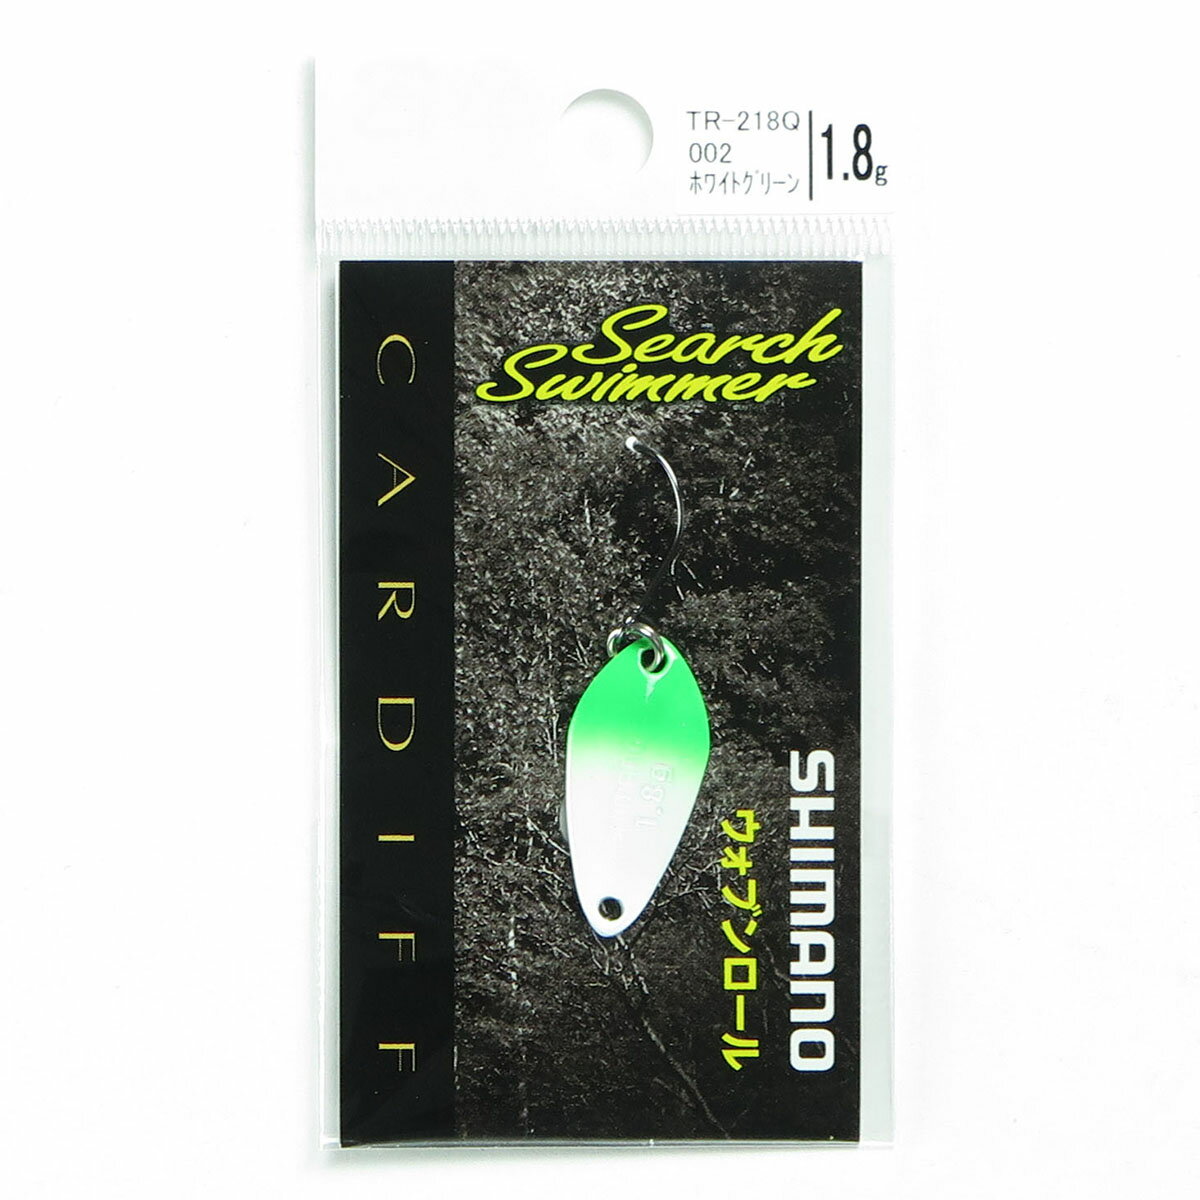 「 シマノ SHIMANO カーディフ サーチスイマー 1.8g 002 ホワイトグリーン TR-218Q 」  釣具 釣り具 釣り用品